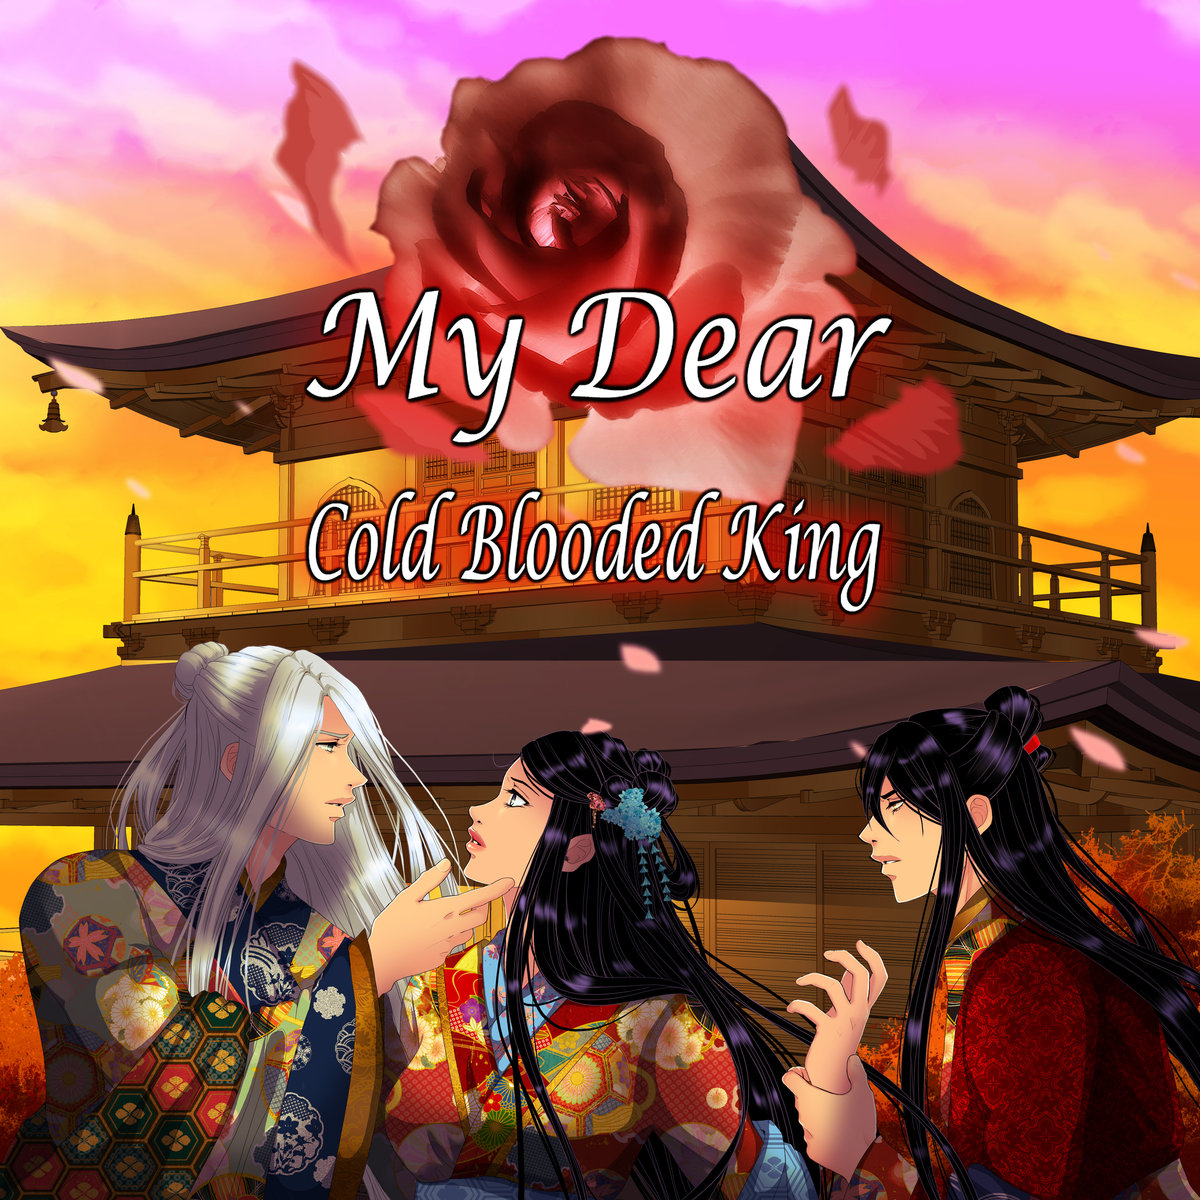 My Dear Cold-Blooded King - Webtoon Photo (43397118) - Fanpop